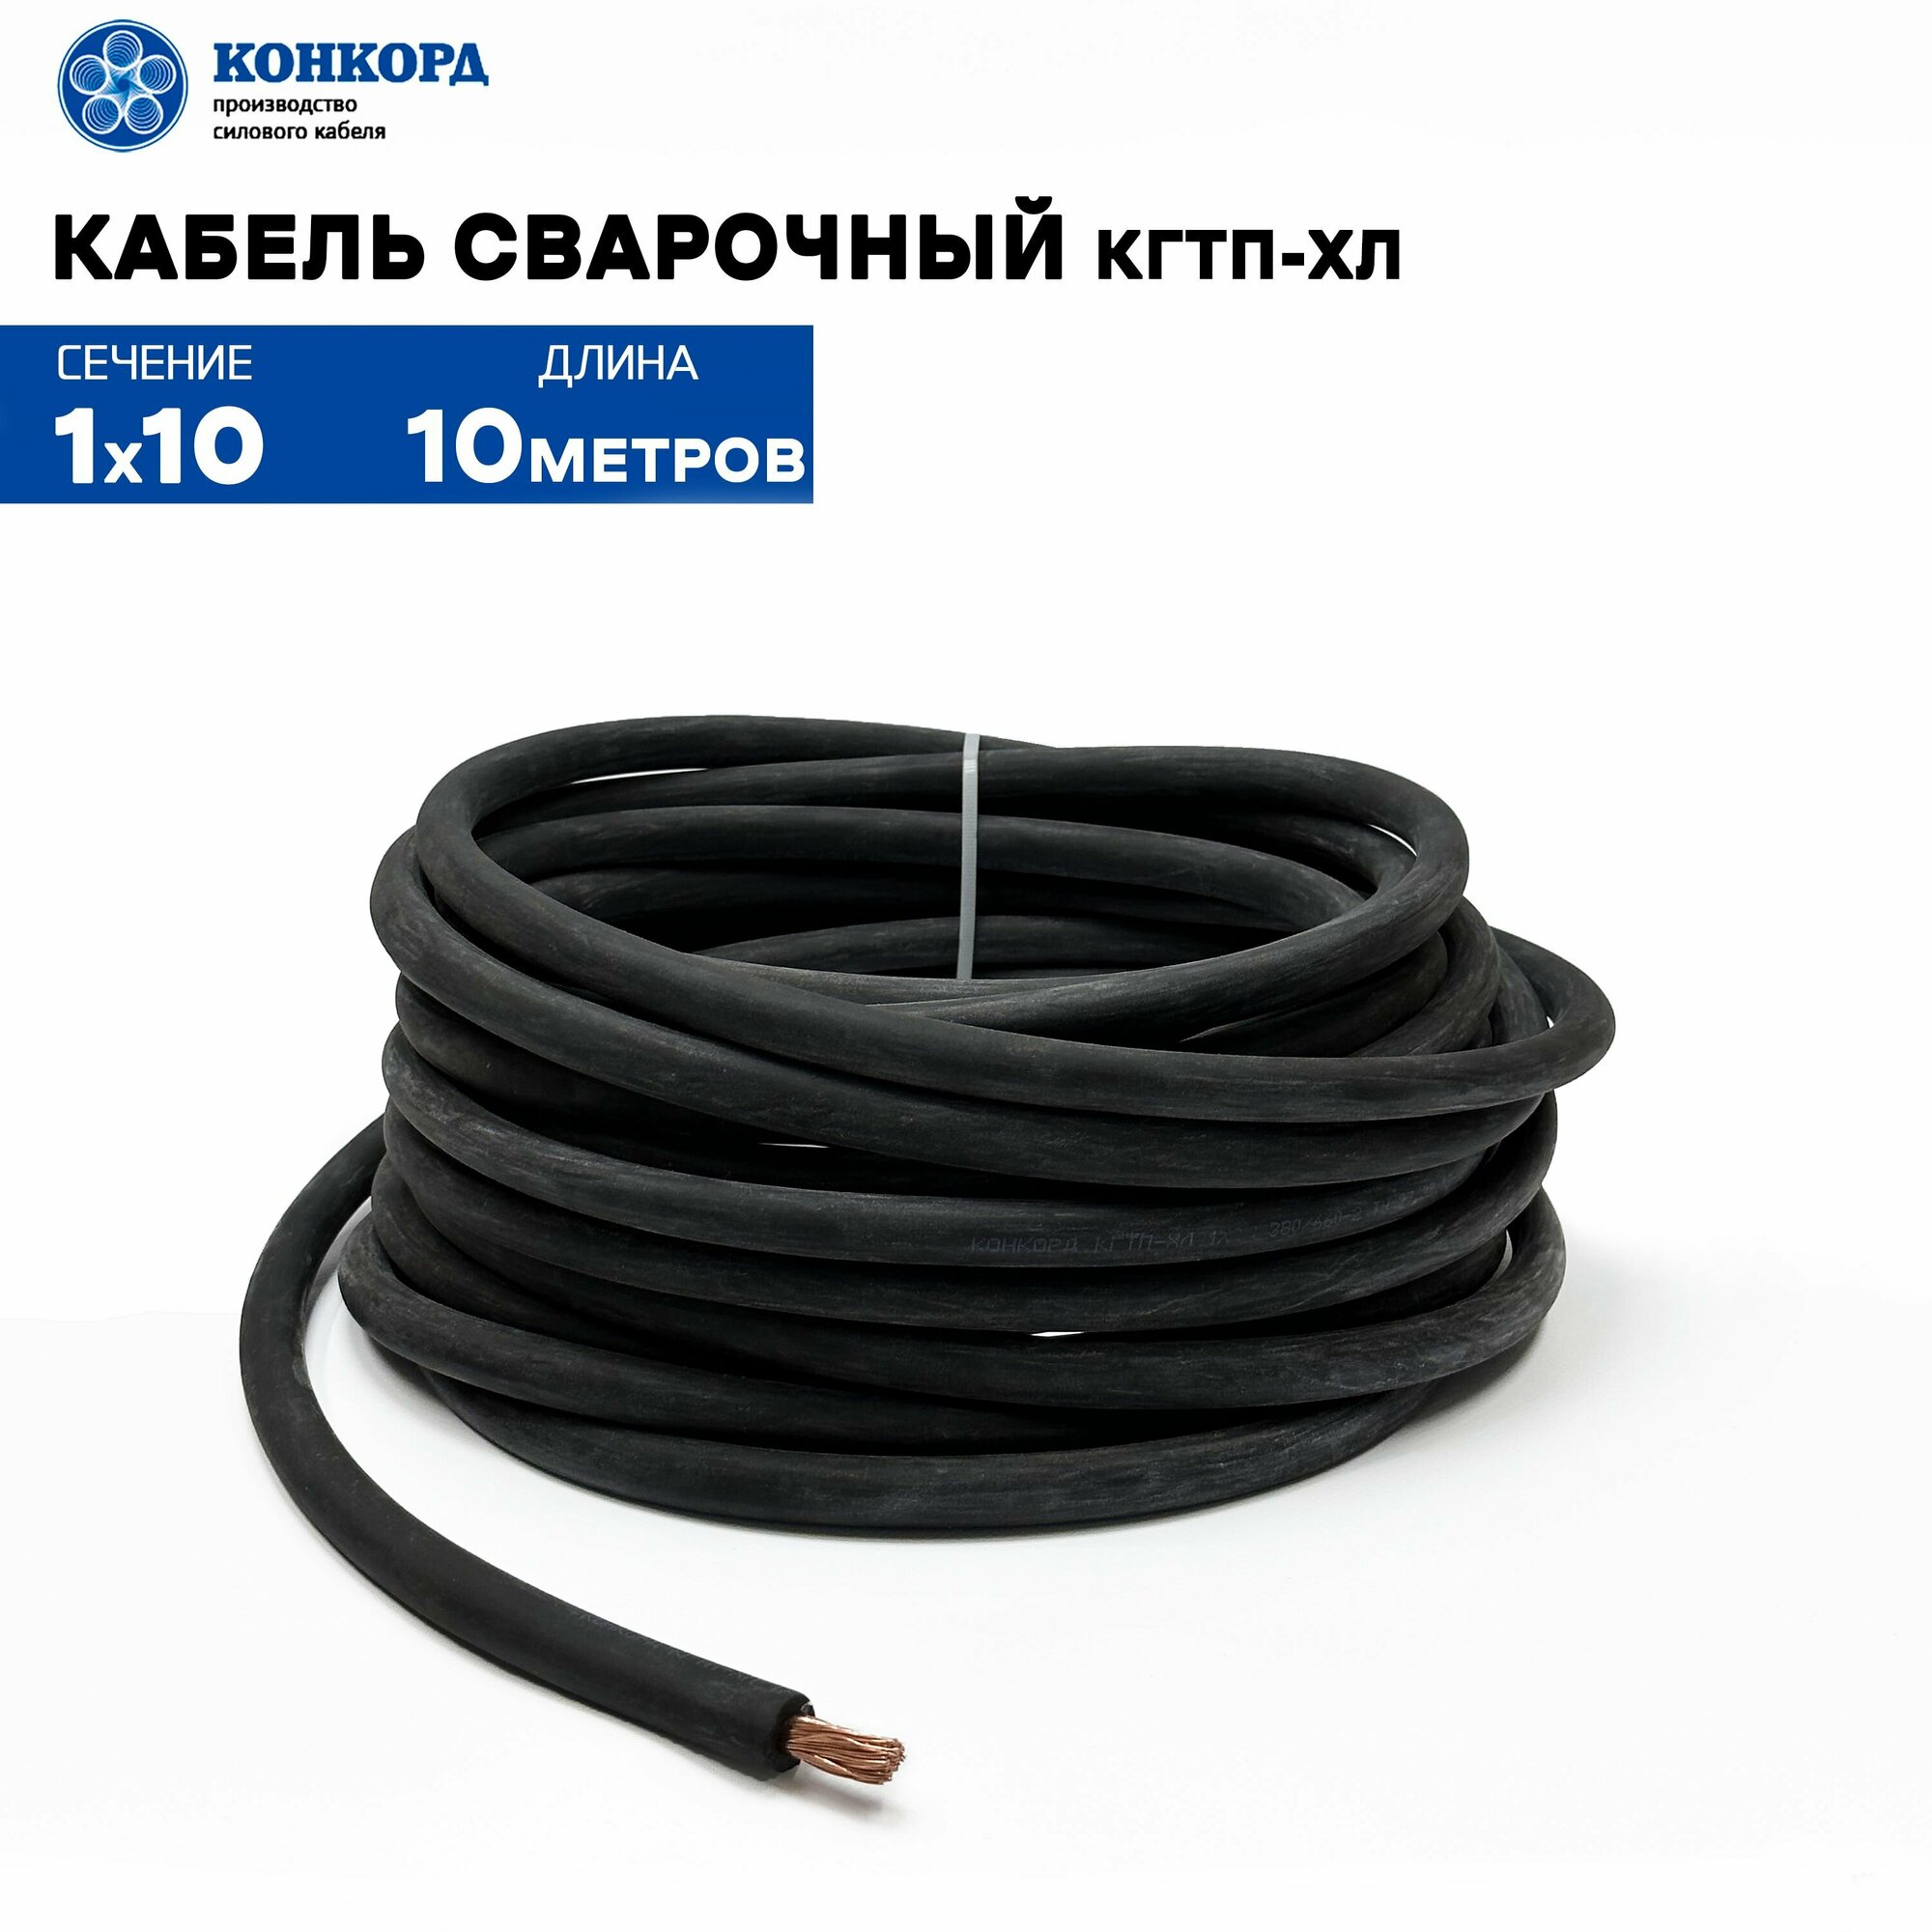 Сварочный кабель КГтп-ХЛ 10кв. мм 10метров.